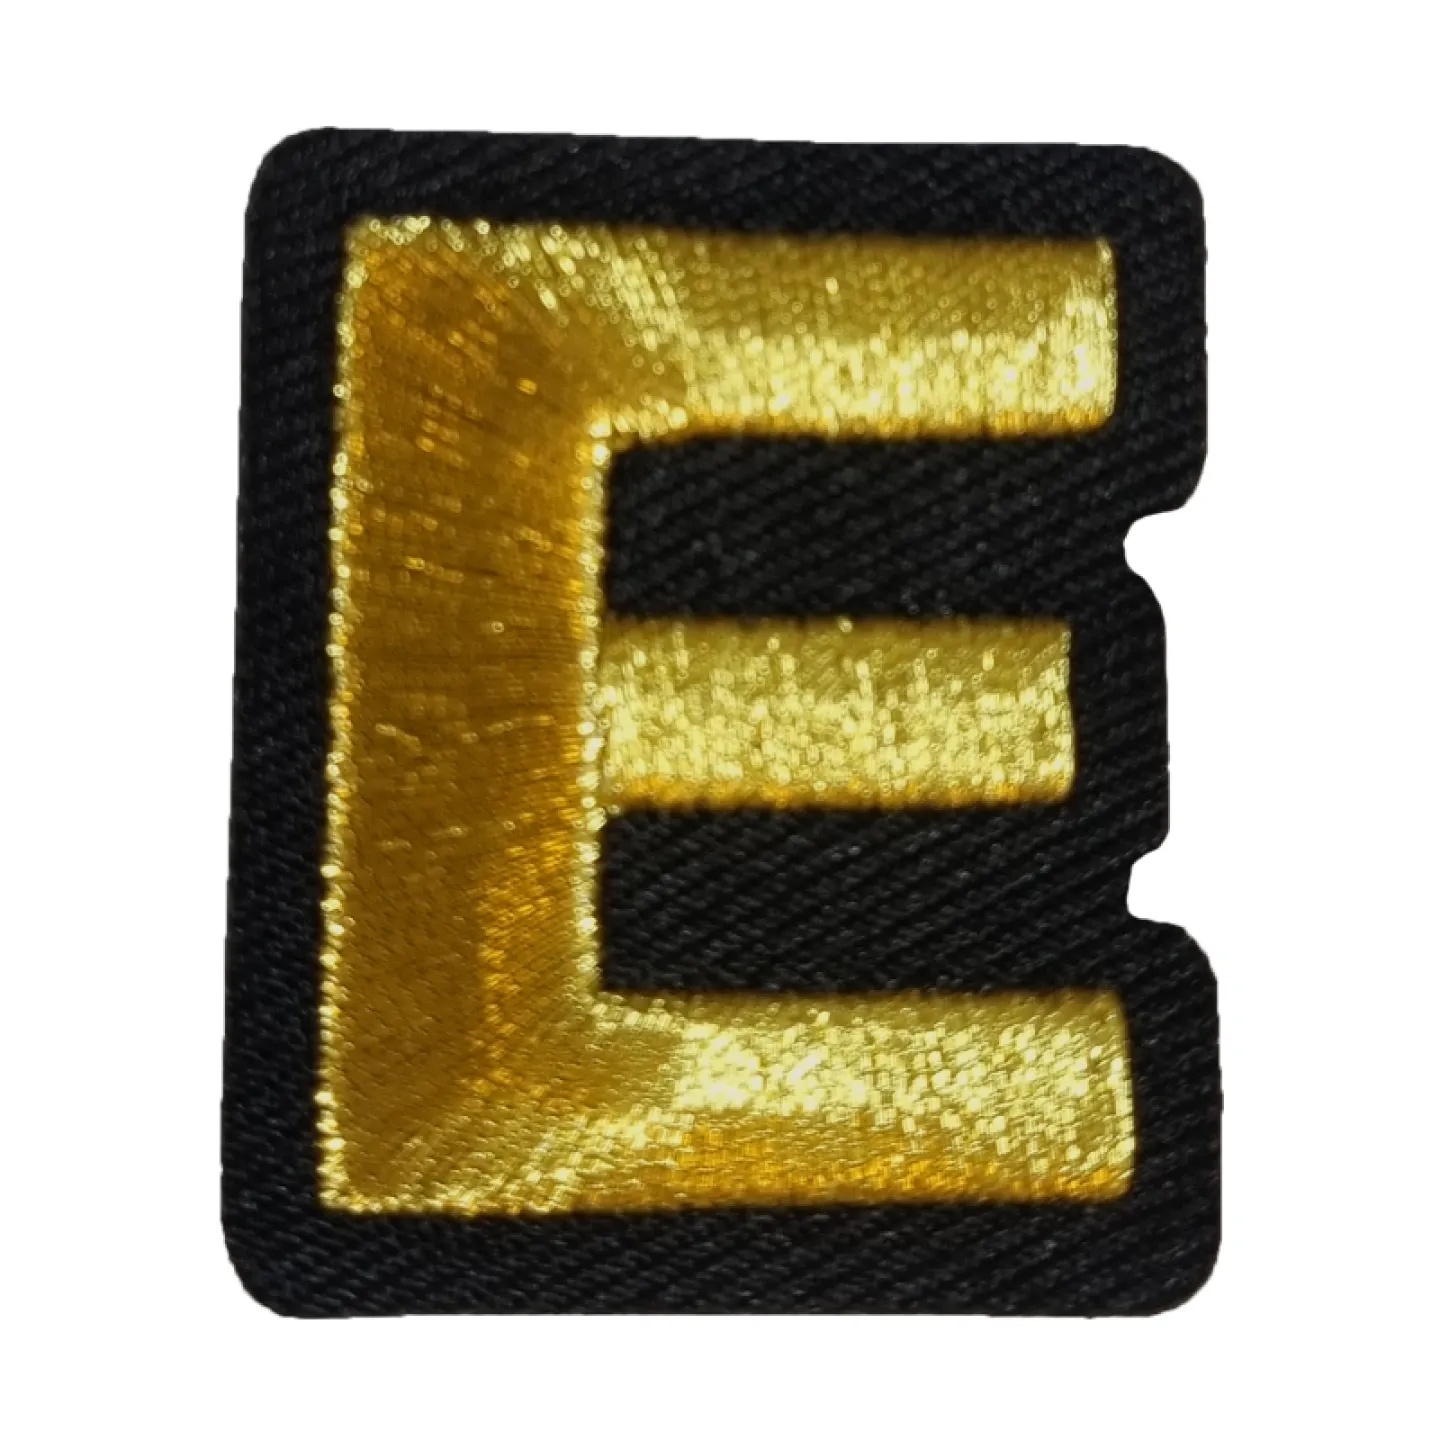 Kruikenstad embleem gouden letter E goedkoop.